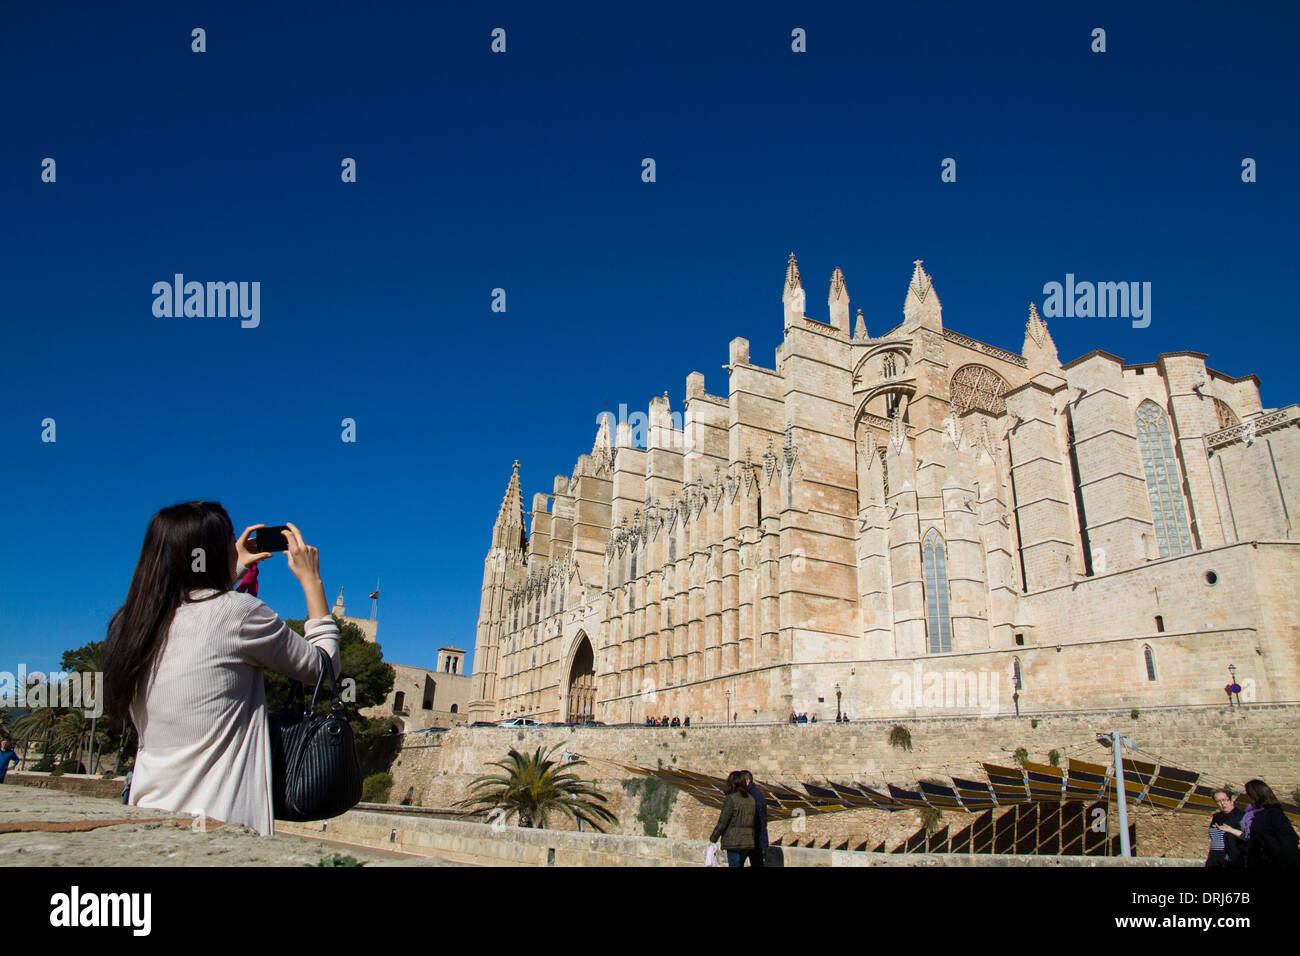 Cathédrale de Palma, femme touristique photographiant, îles Baléares Catalogne Espagne Banque D'Images